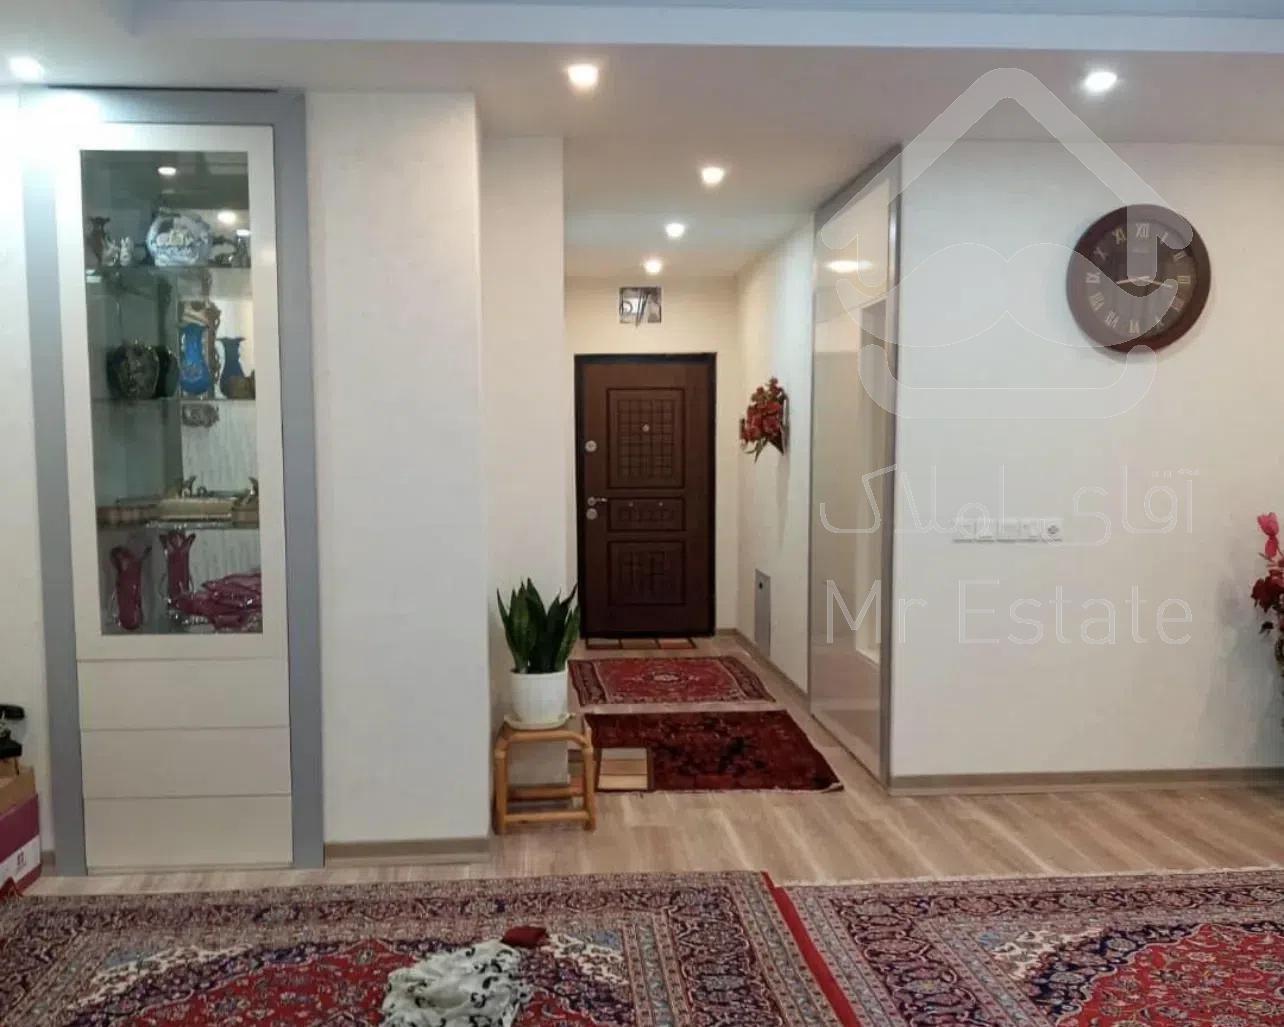 فروش واحد آپارتمان شهرک شهید خرازی برج مجلل